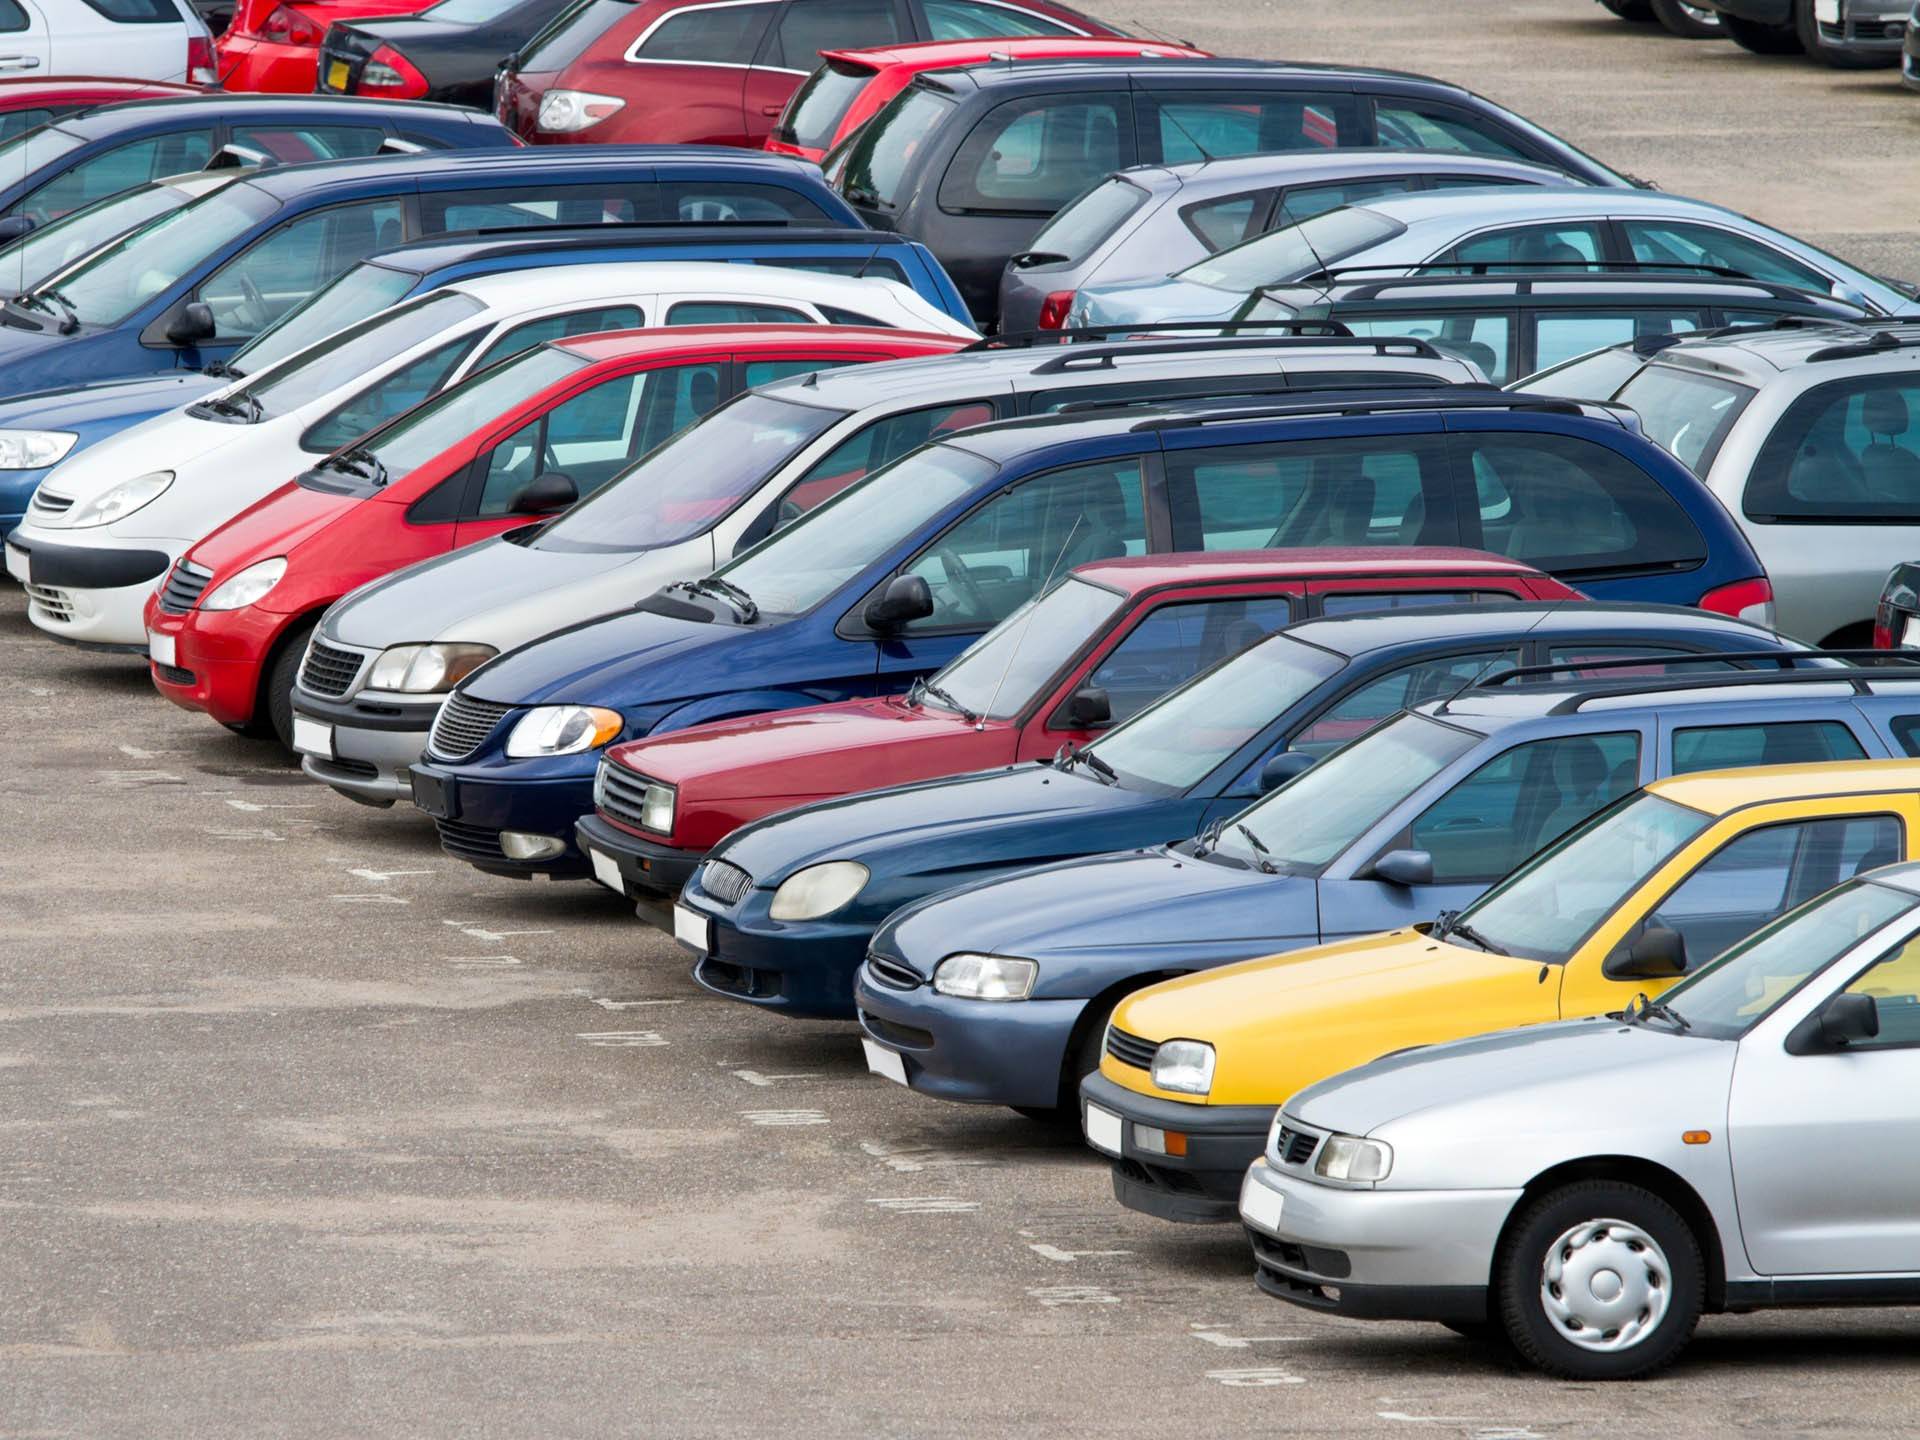 Стало известно, в каком регионе чаще всего продаются подержанные автомобили